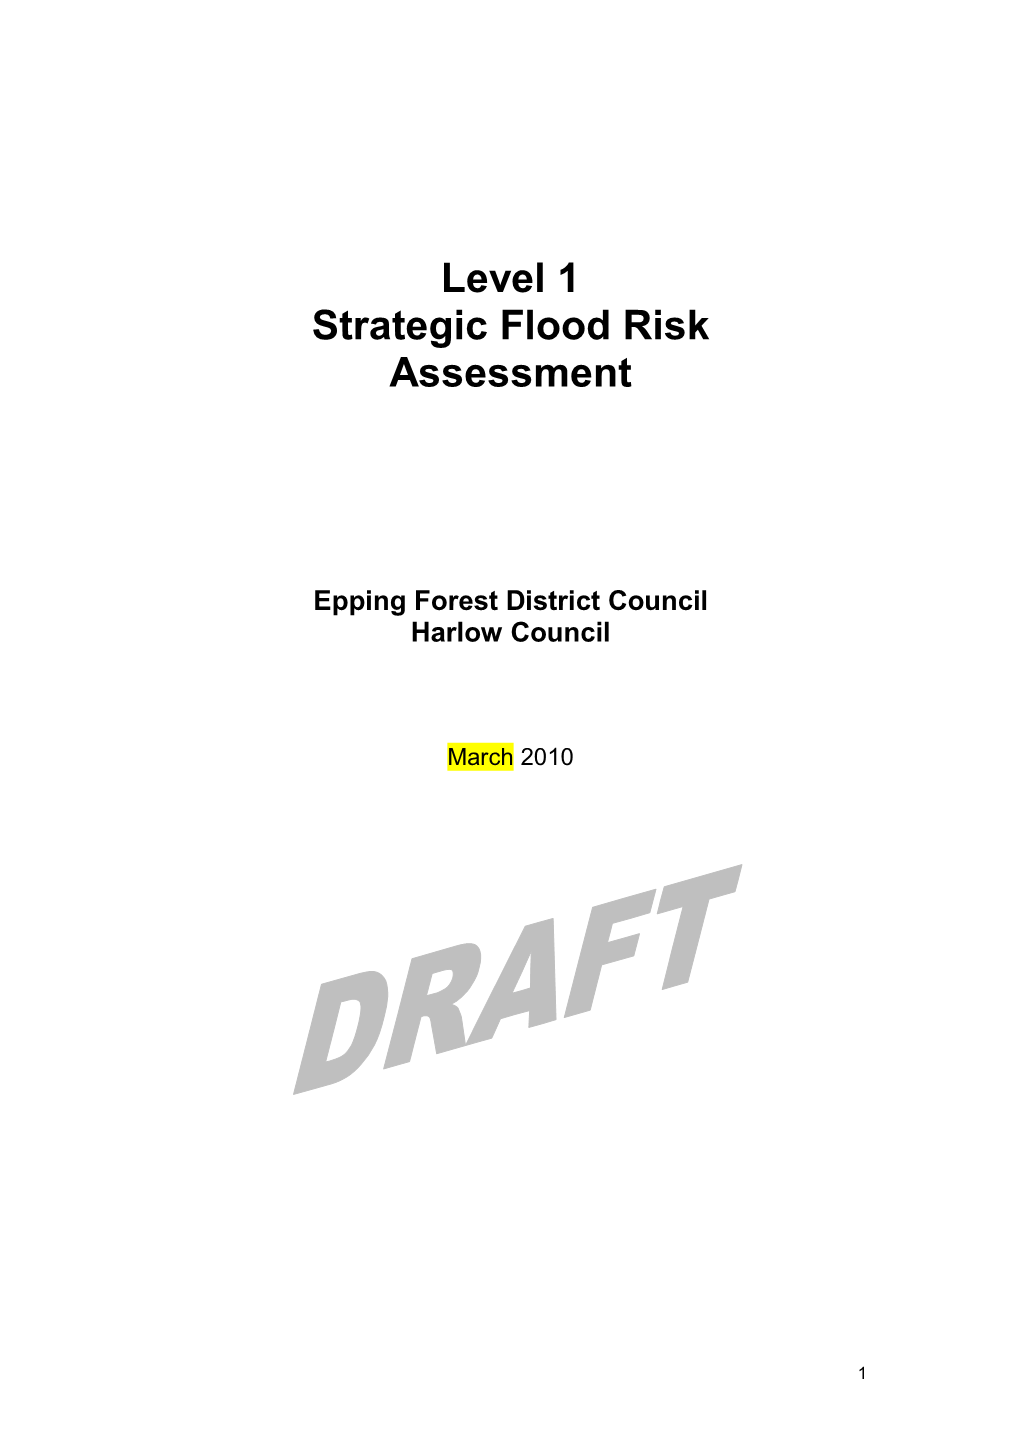 Level 1 Strategic Flood Risk Assessment